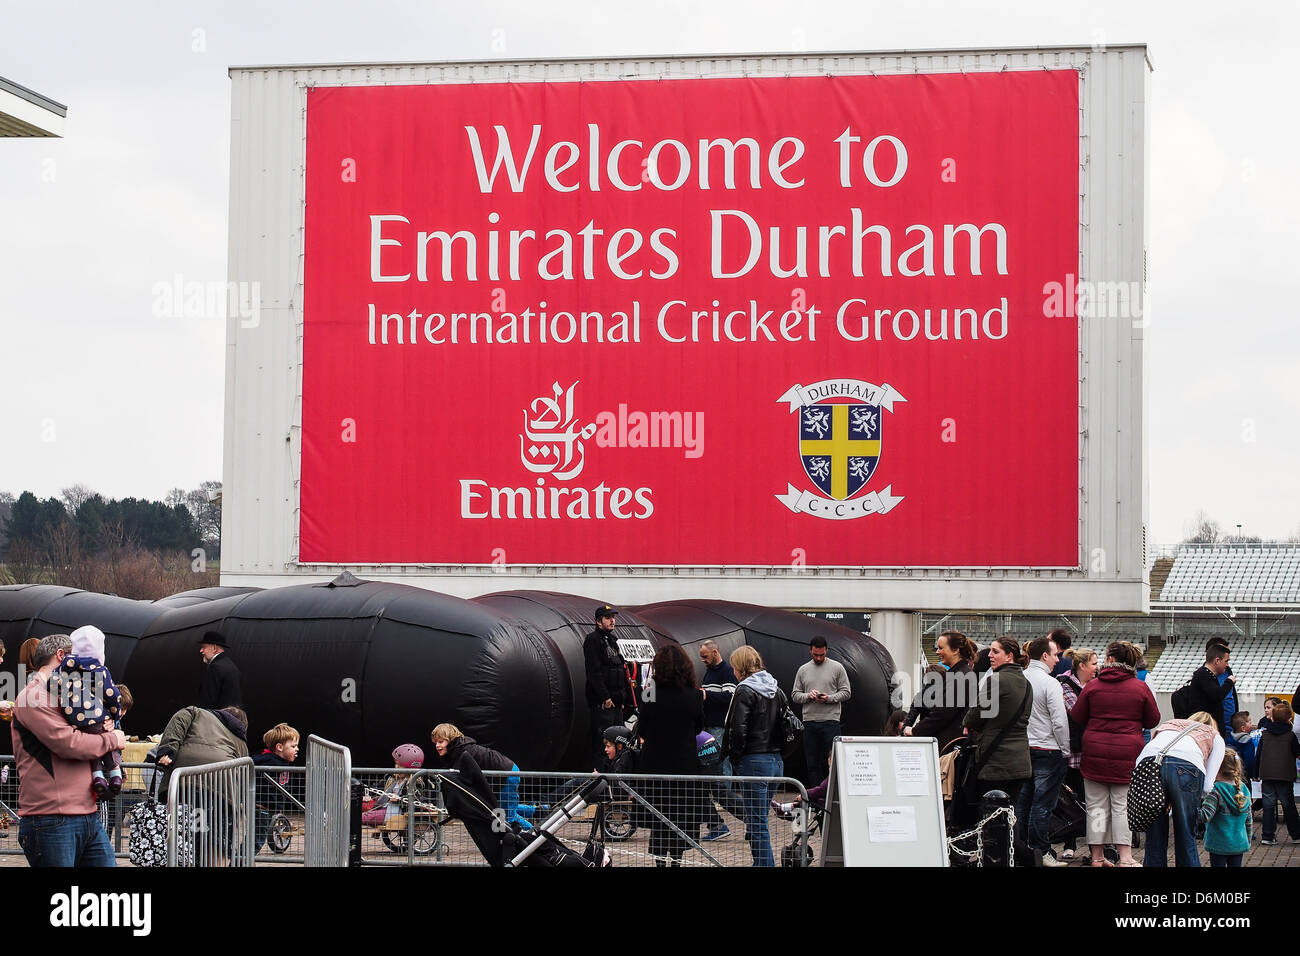 Durham cricket ground Stock Photo